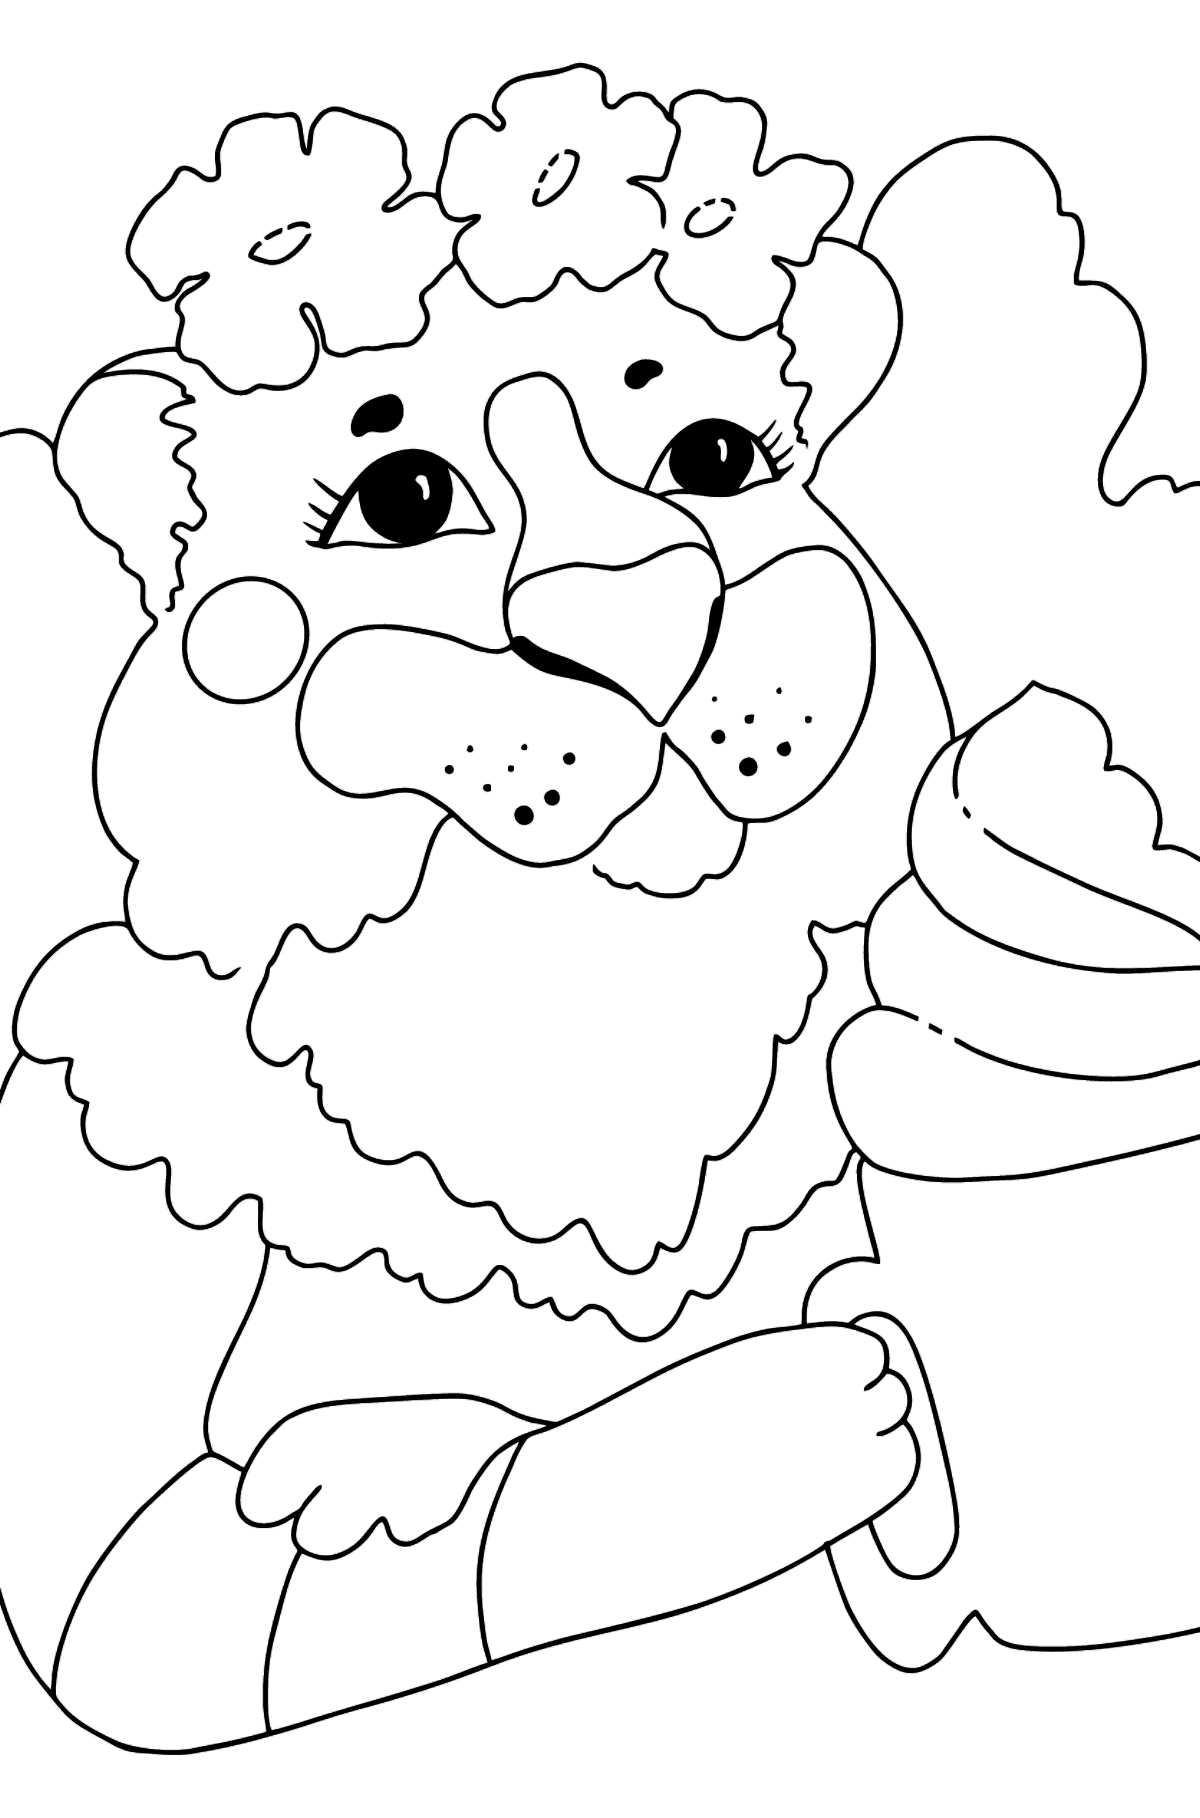 Раскраска милая Тигрица - Картинки для Детей